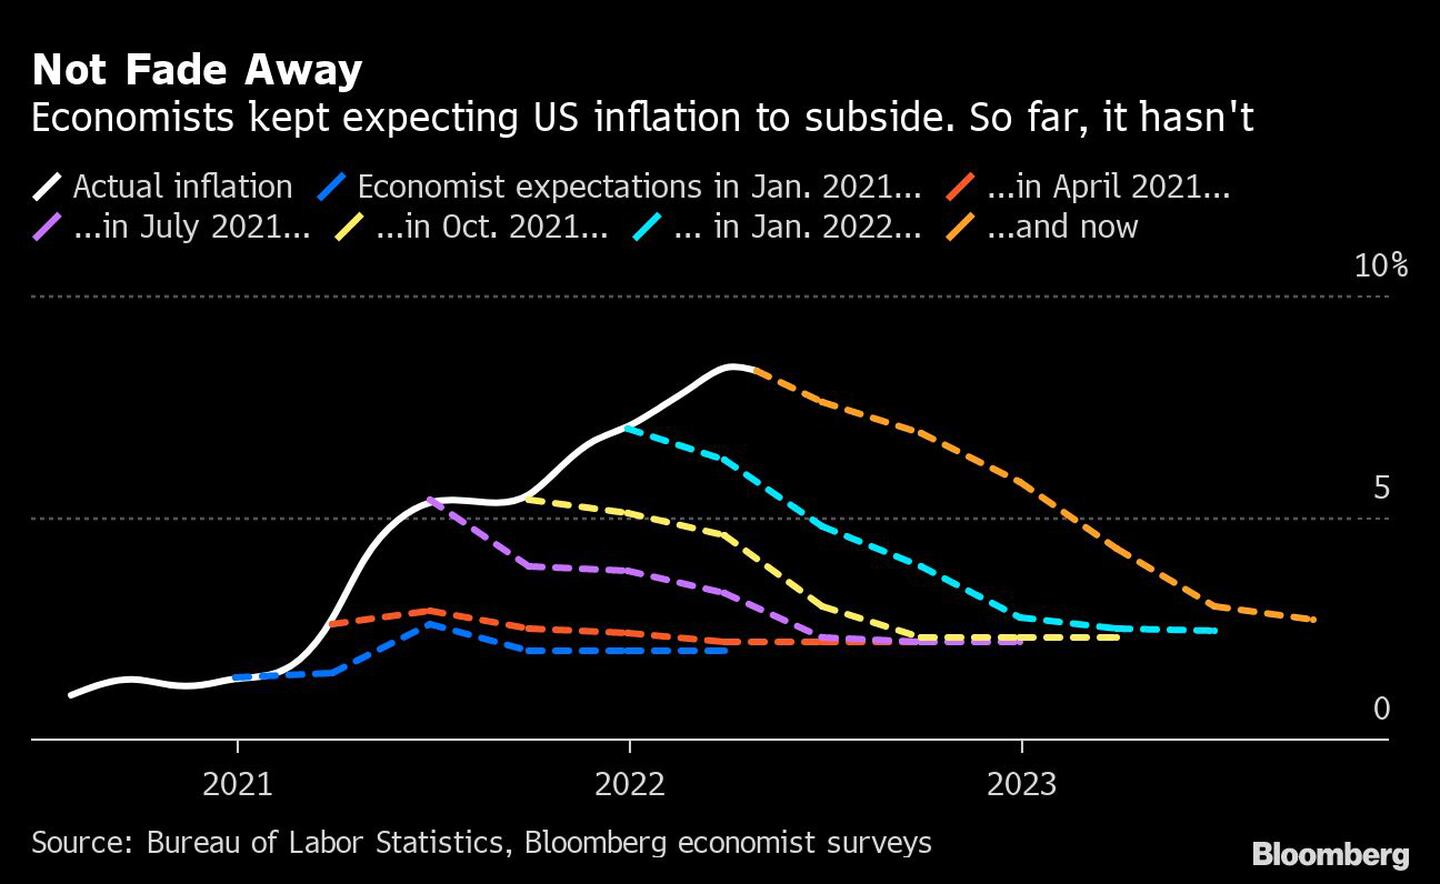 Los economistas seguían esperando que la inflación estadounidense disminuyera. Hasta ahora, no ha sucedidodfd